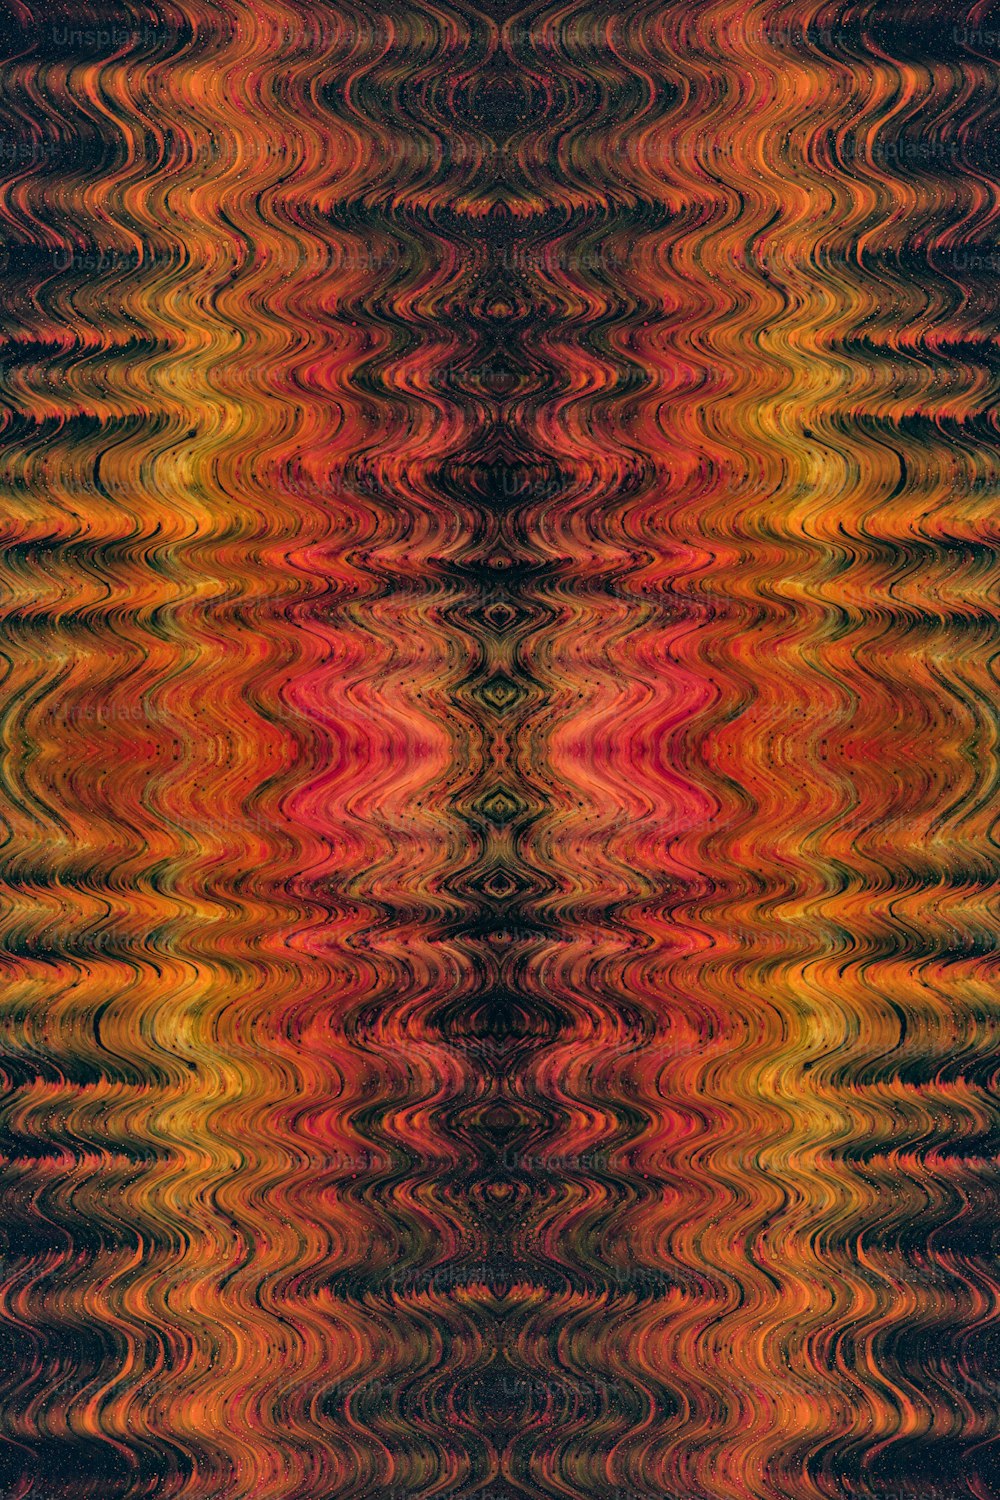 um padrão muito colorido que se parece com uma onda